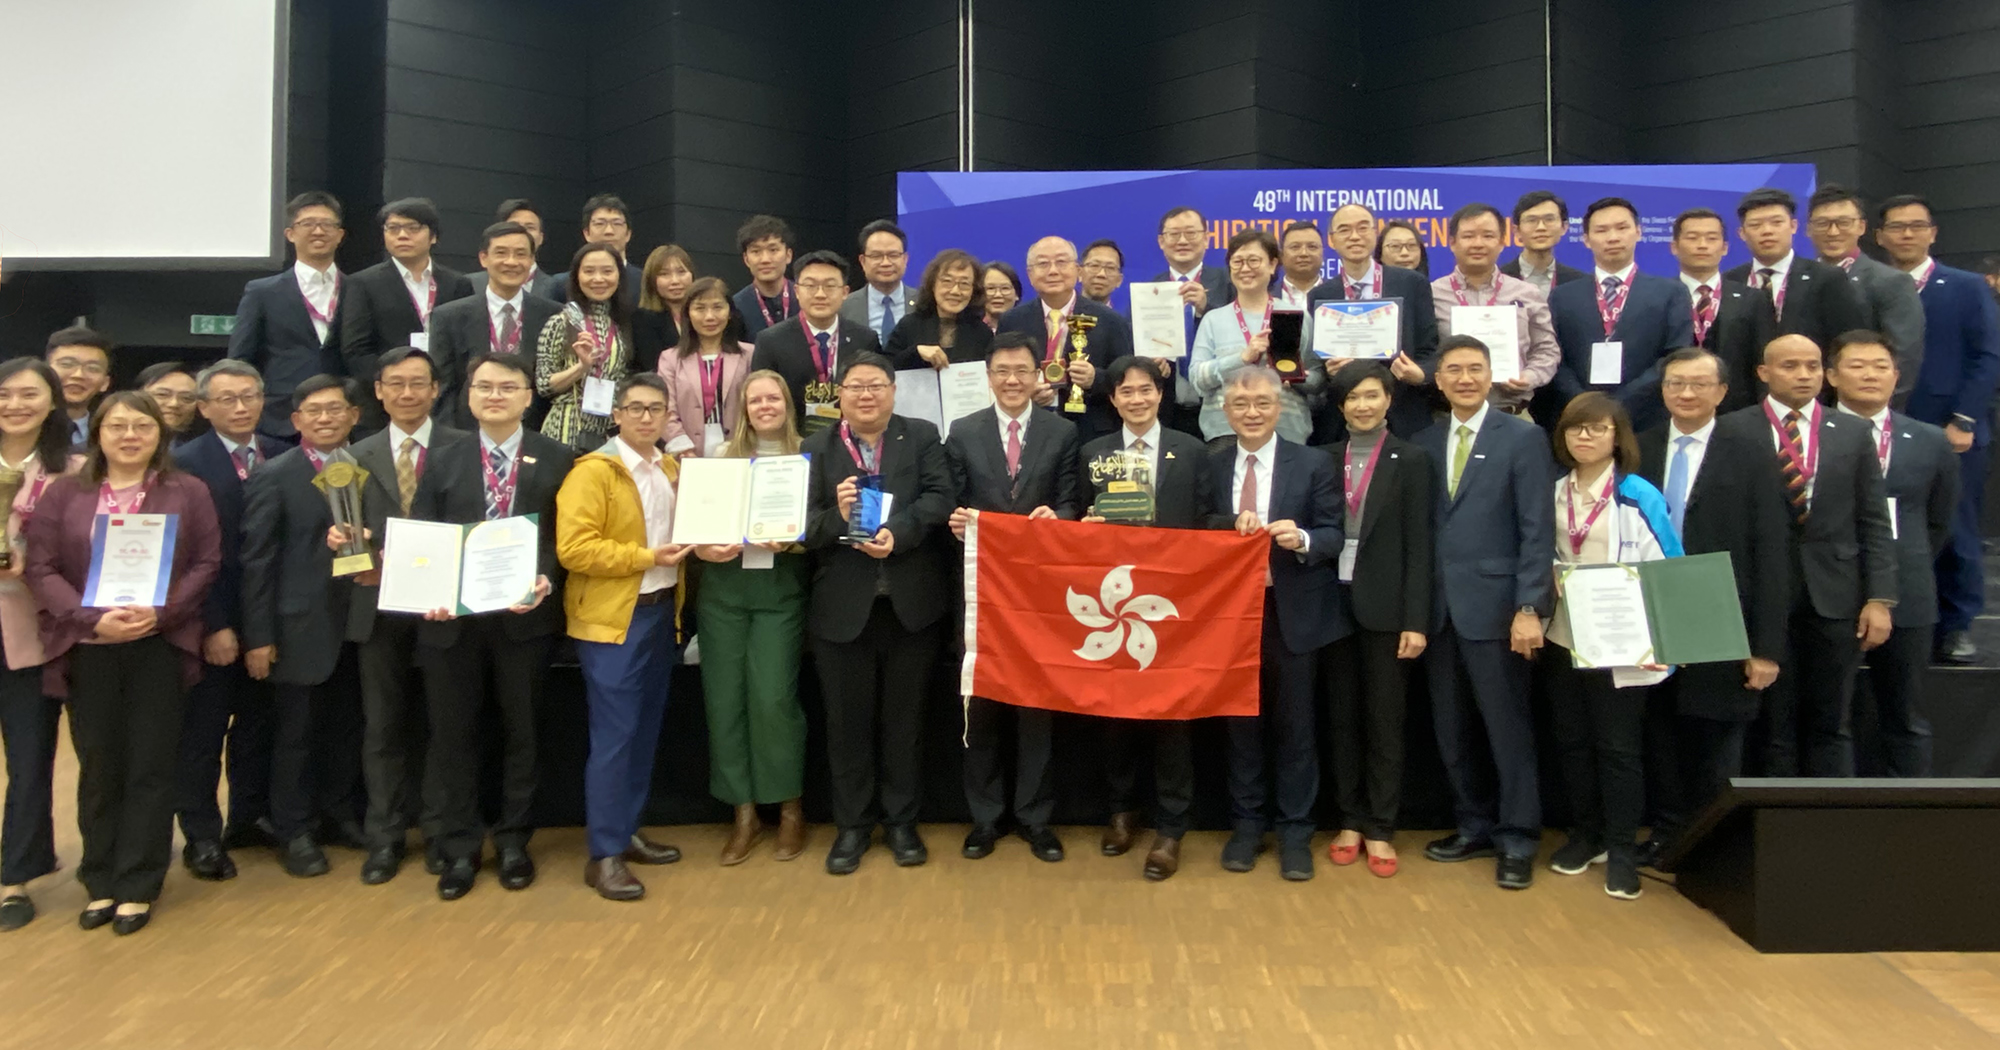 理大在第四十八届日内瓦国际发明展共夺得31项奖项，与其他参展香港团队同为香港创科发展争光。